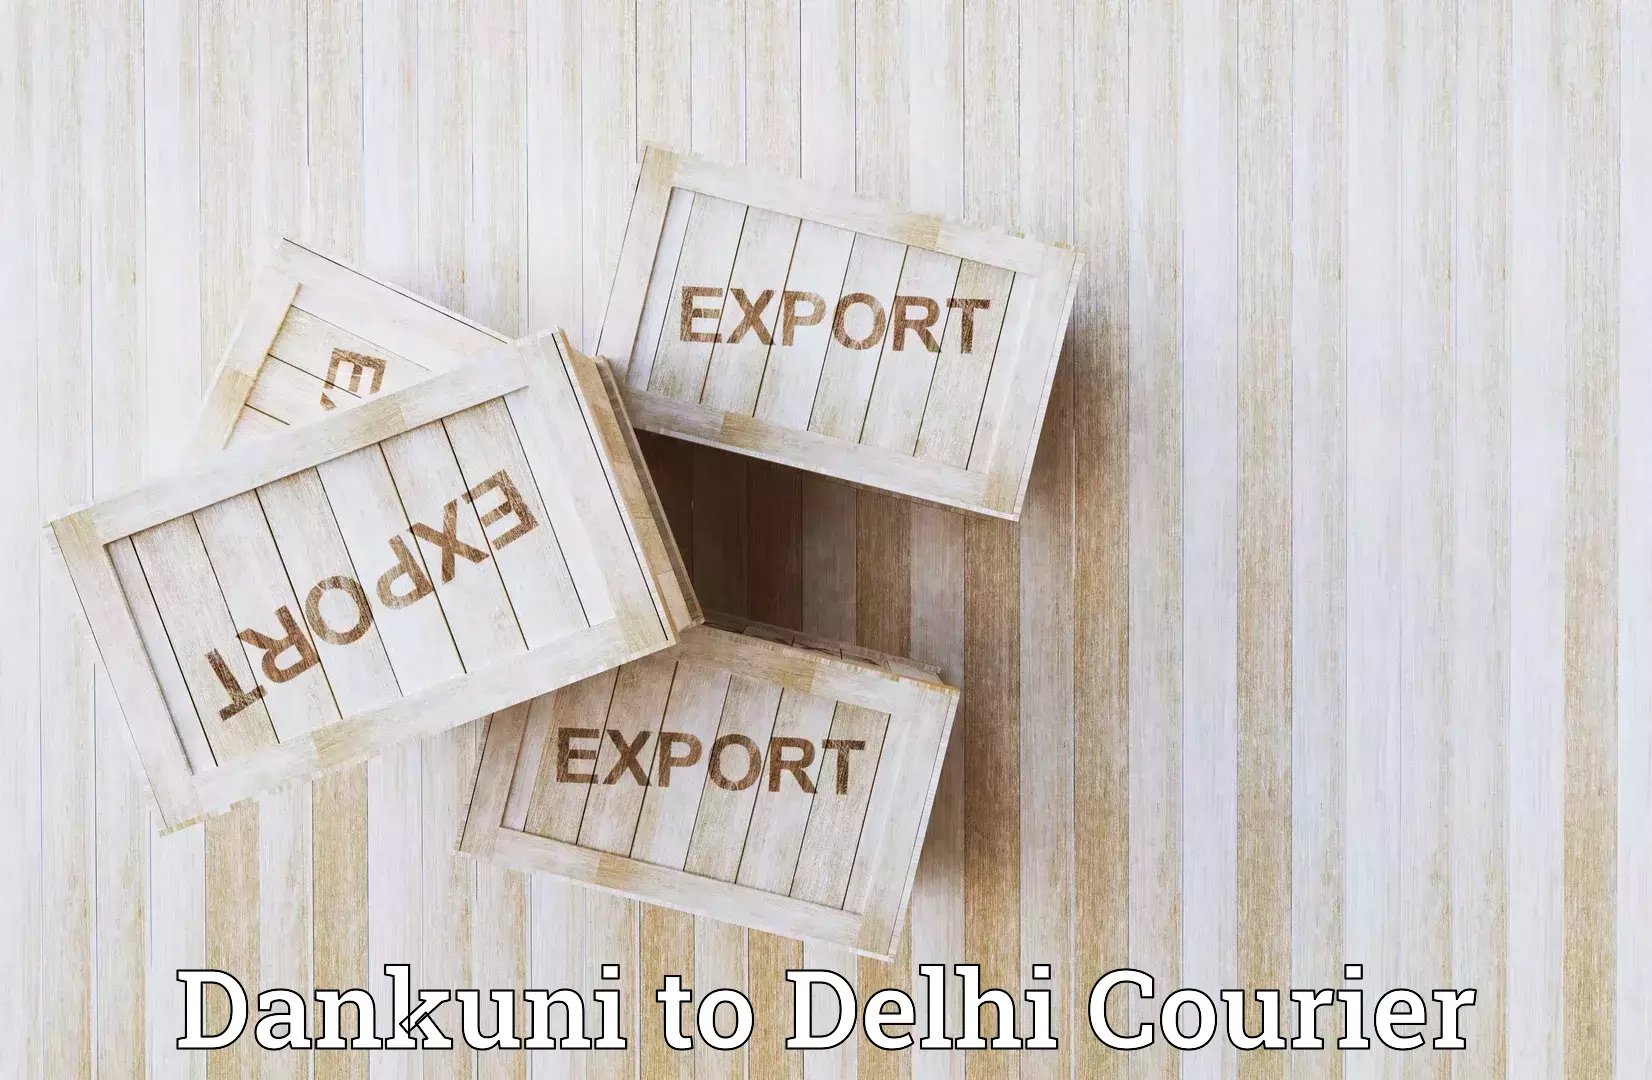 Courier rate comparison in Dankuni to University of Delhi